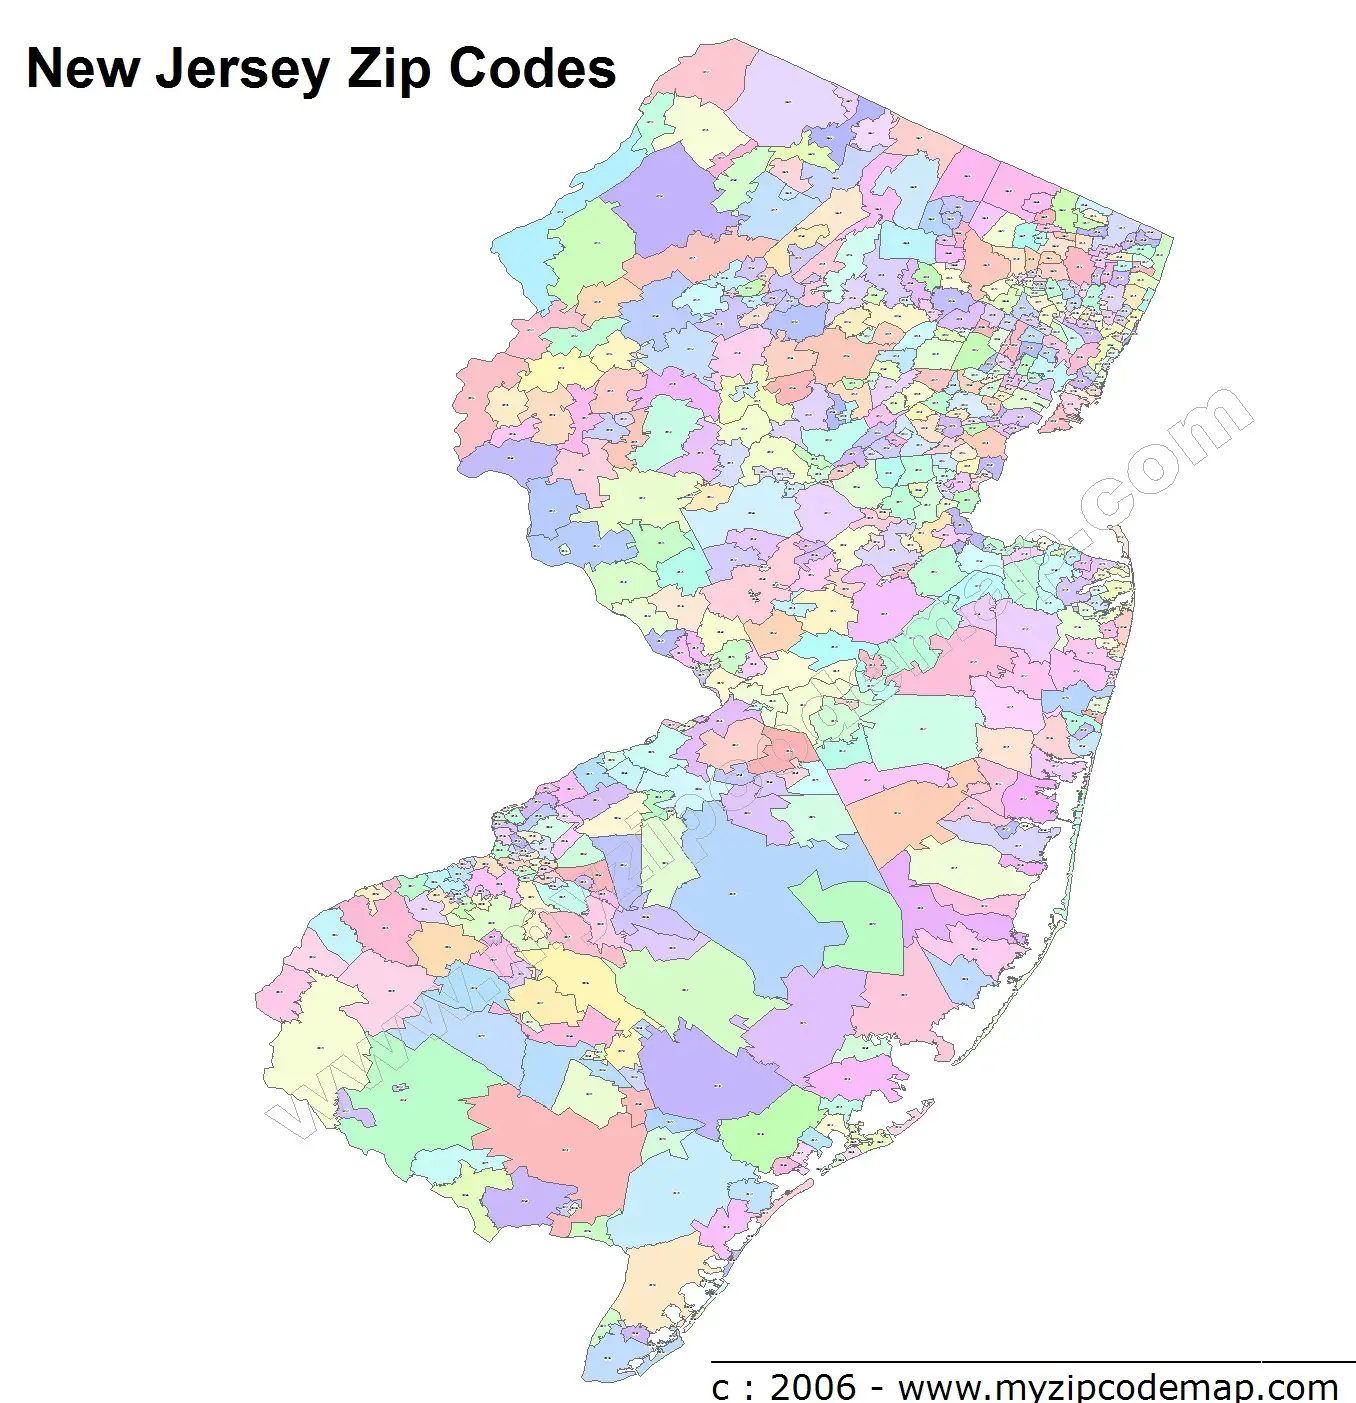 New Jersey Zip Code Maps - Free New Jersey Zip Code Maps